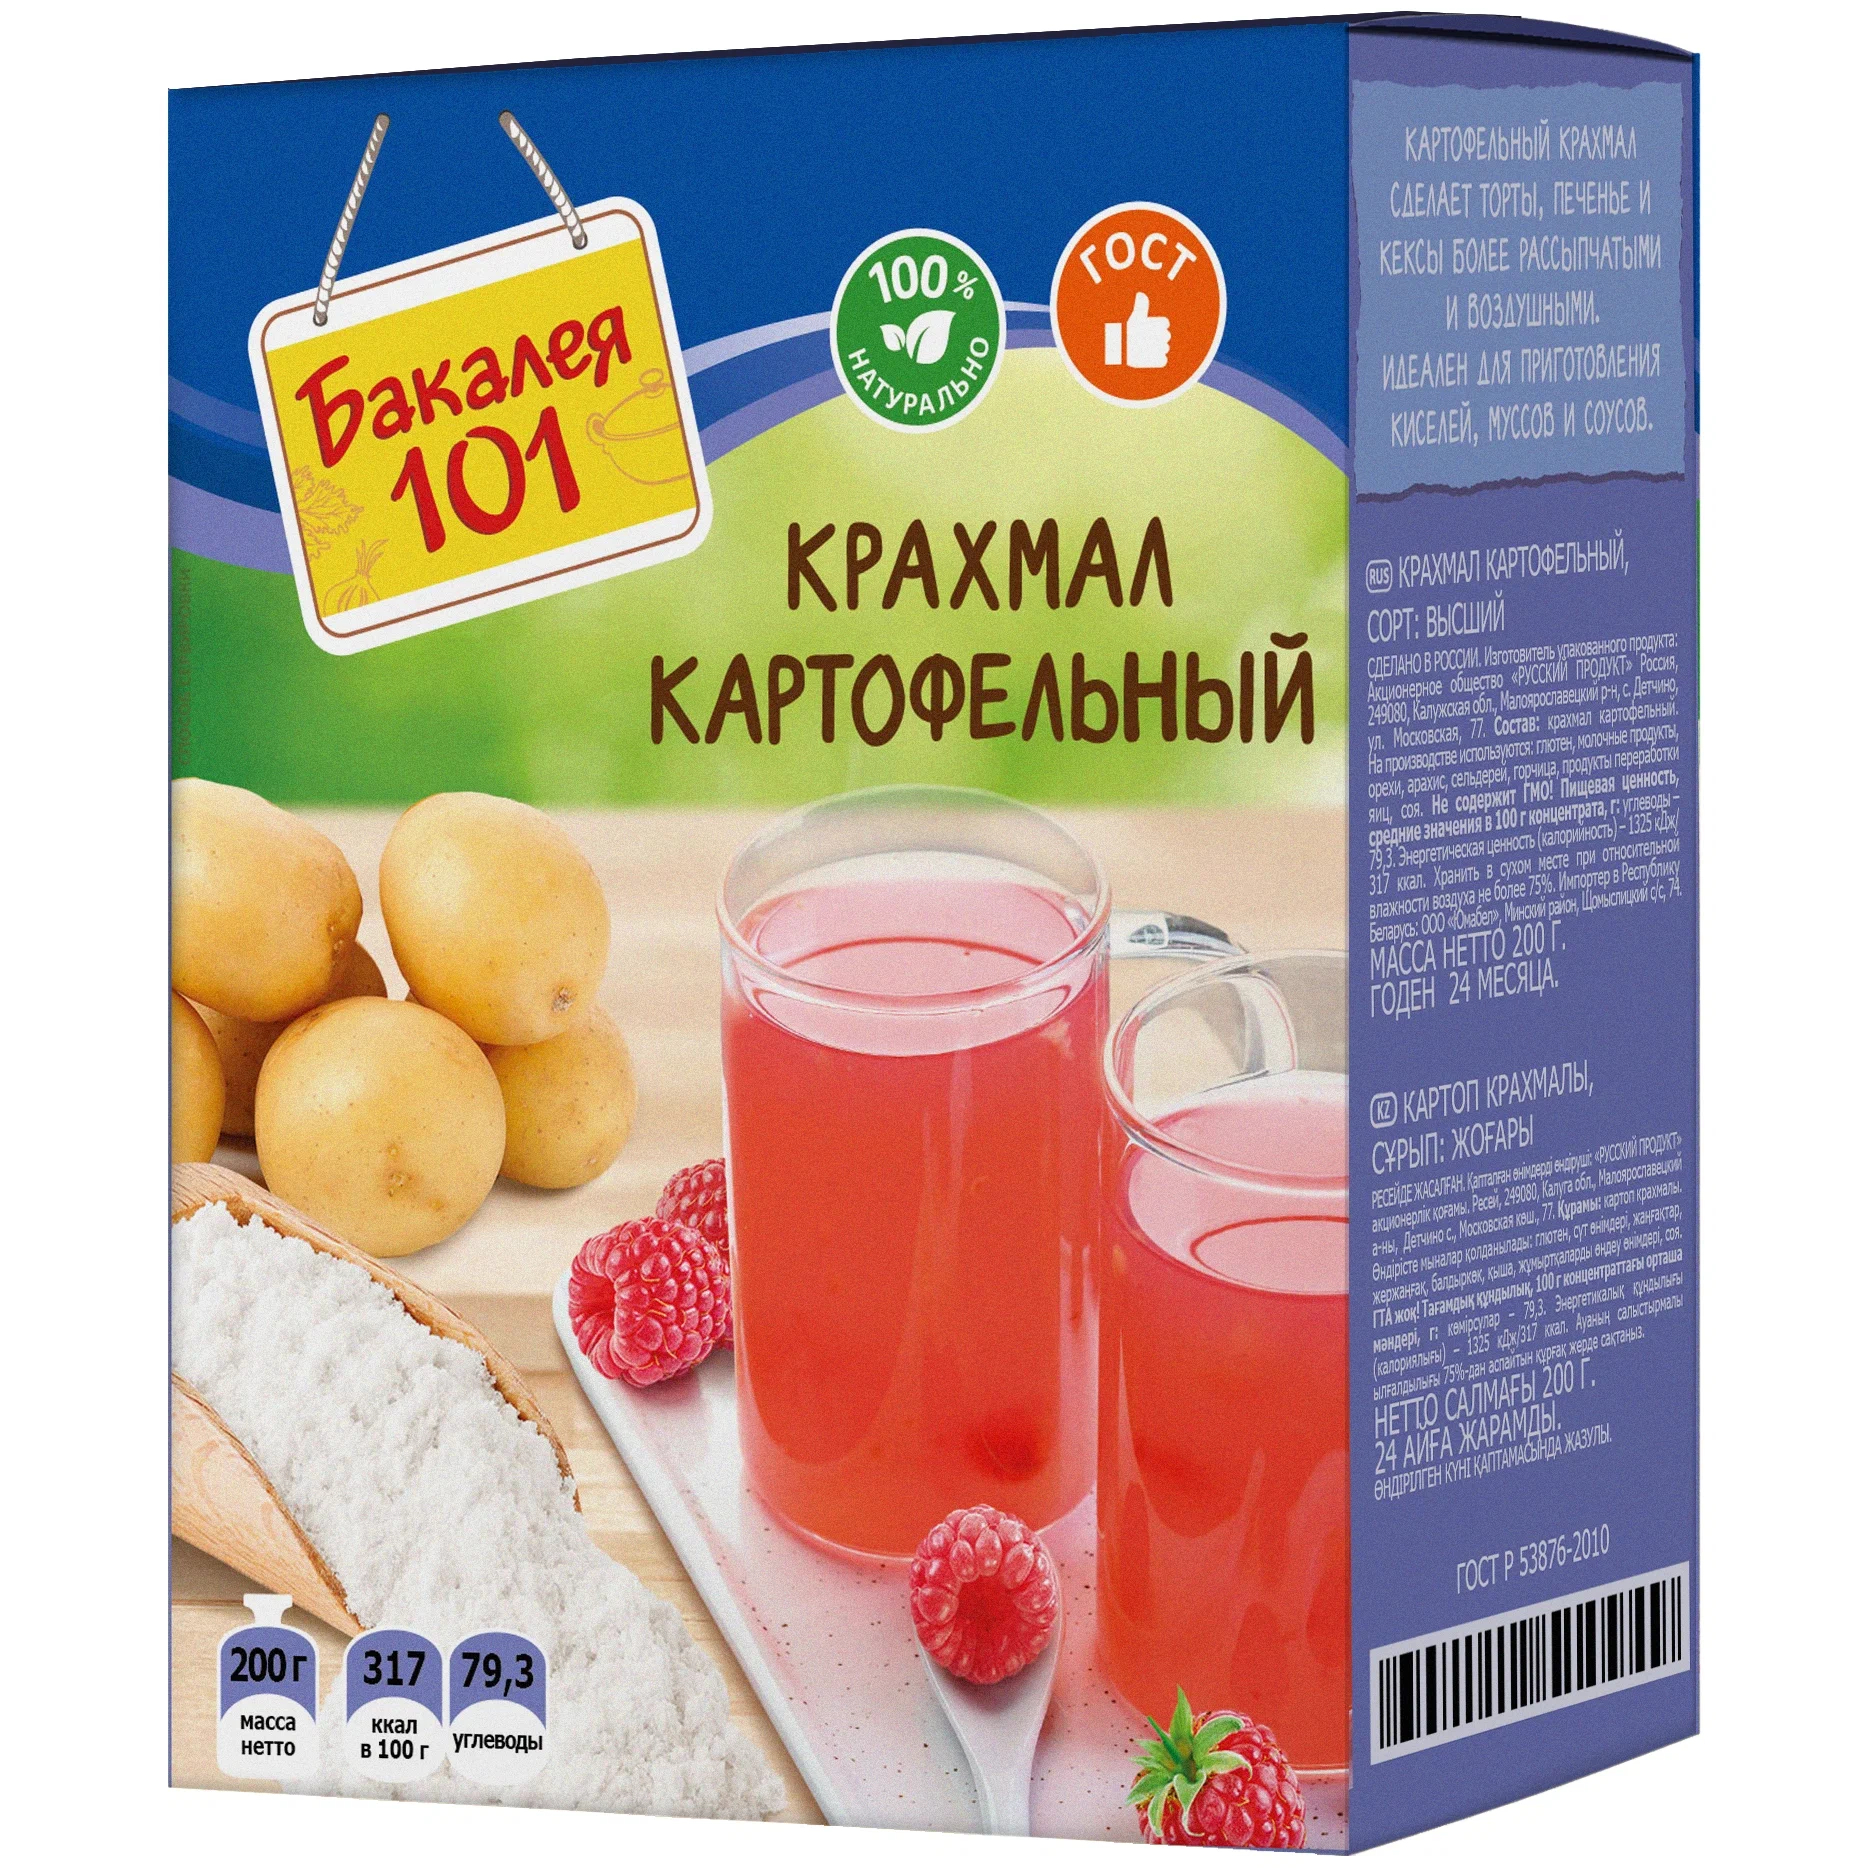 Крахмал картофельный Русский продукт Бакалея 101 200 г желатин пищевой русский продукт бакалея 101 50 г